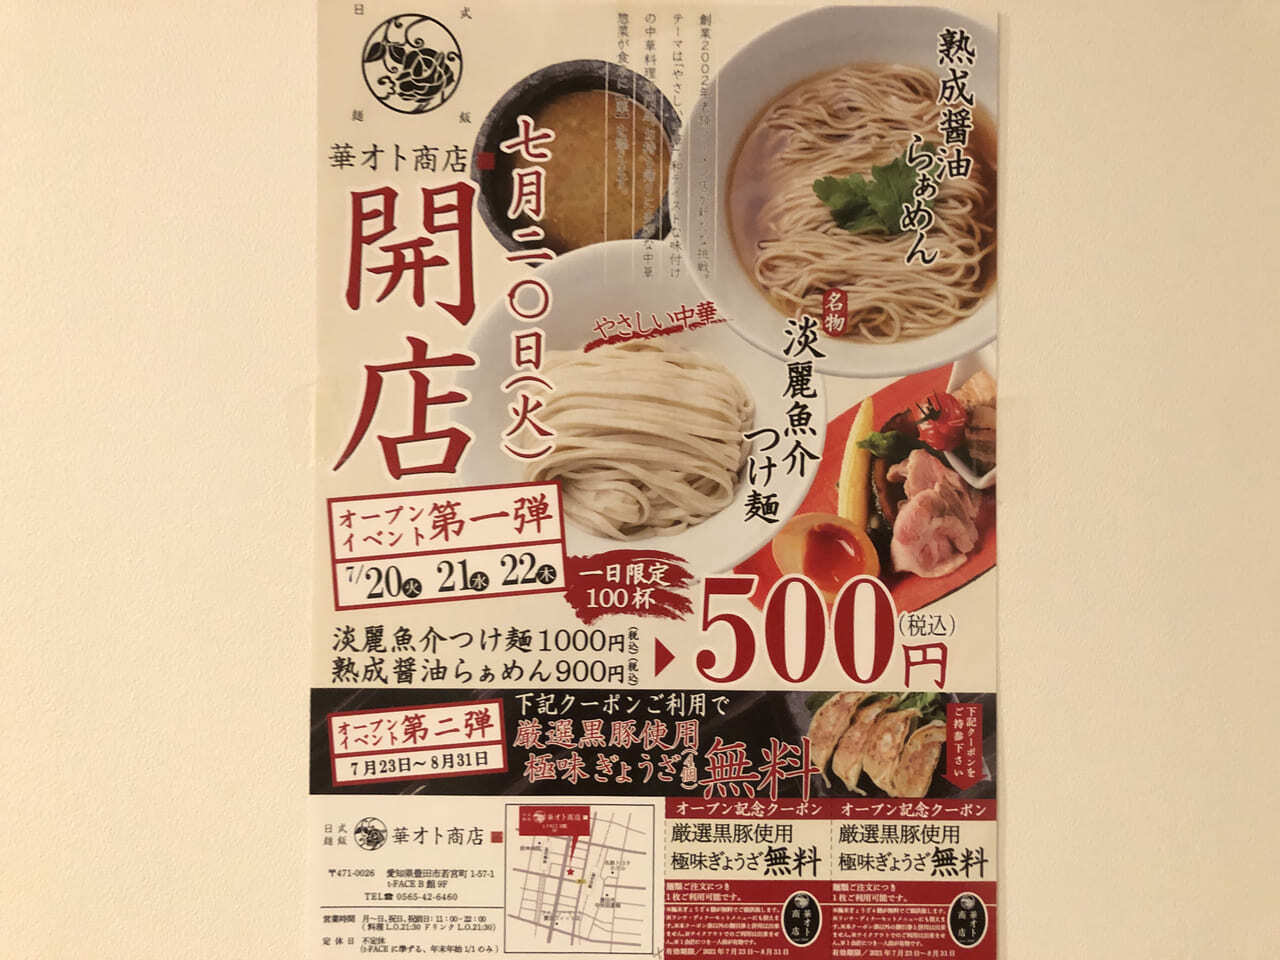 日式麺飯「華オト商店」チラシ